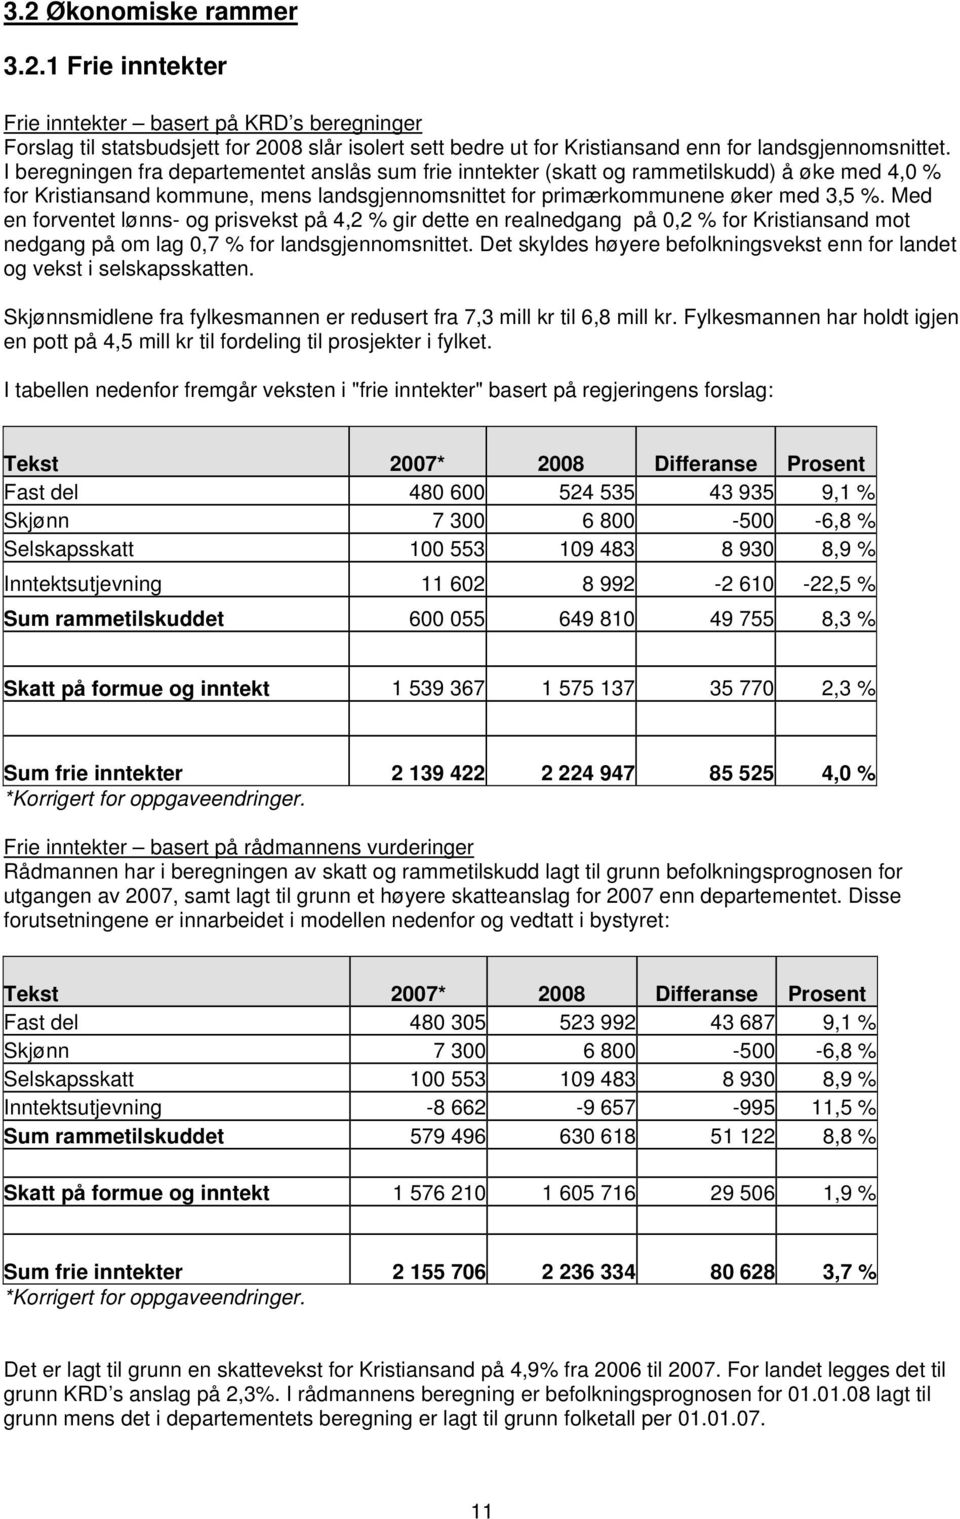 Med en forventet lønns- og prisvekst på 4,2 % gir dette en realnedgang på 0,2 % for Kristiansand mot nedgang på om lag 0,7 % for landsgjennomsnittet.